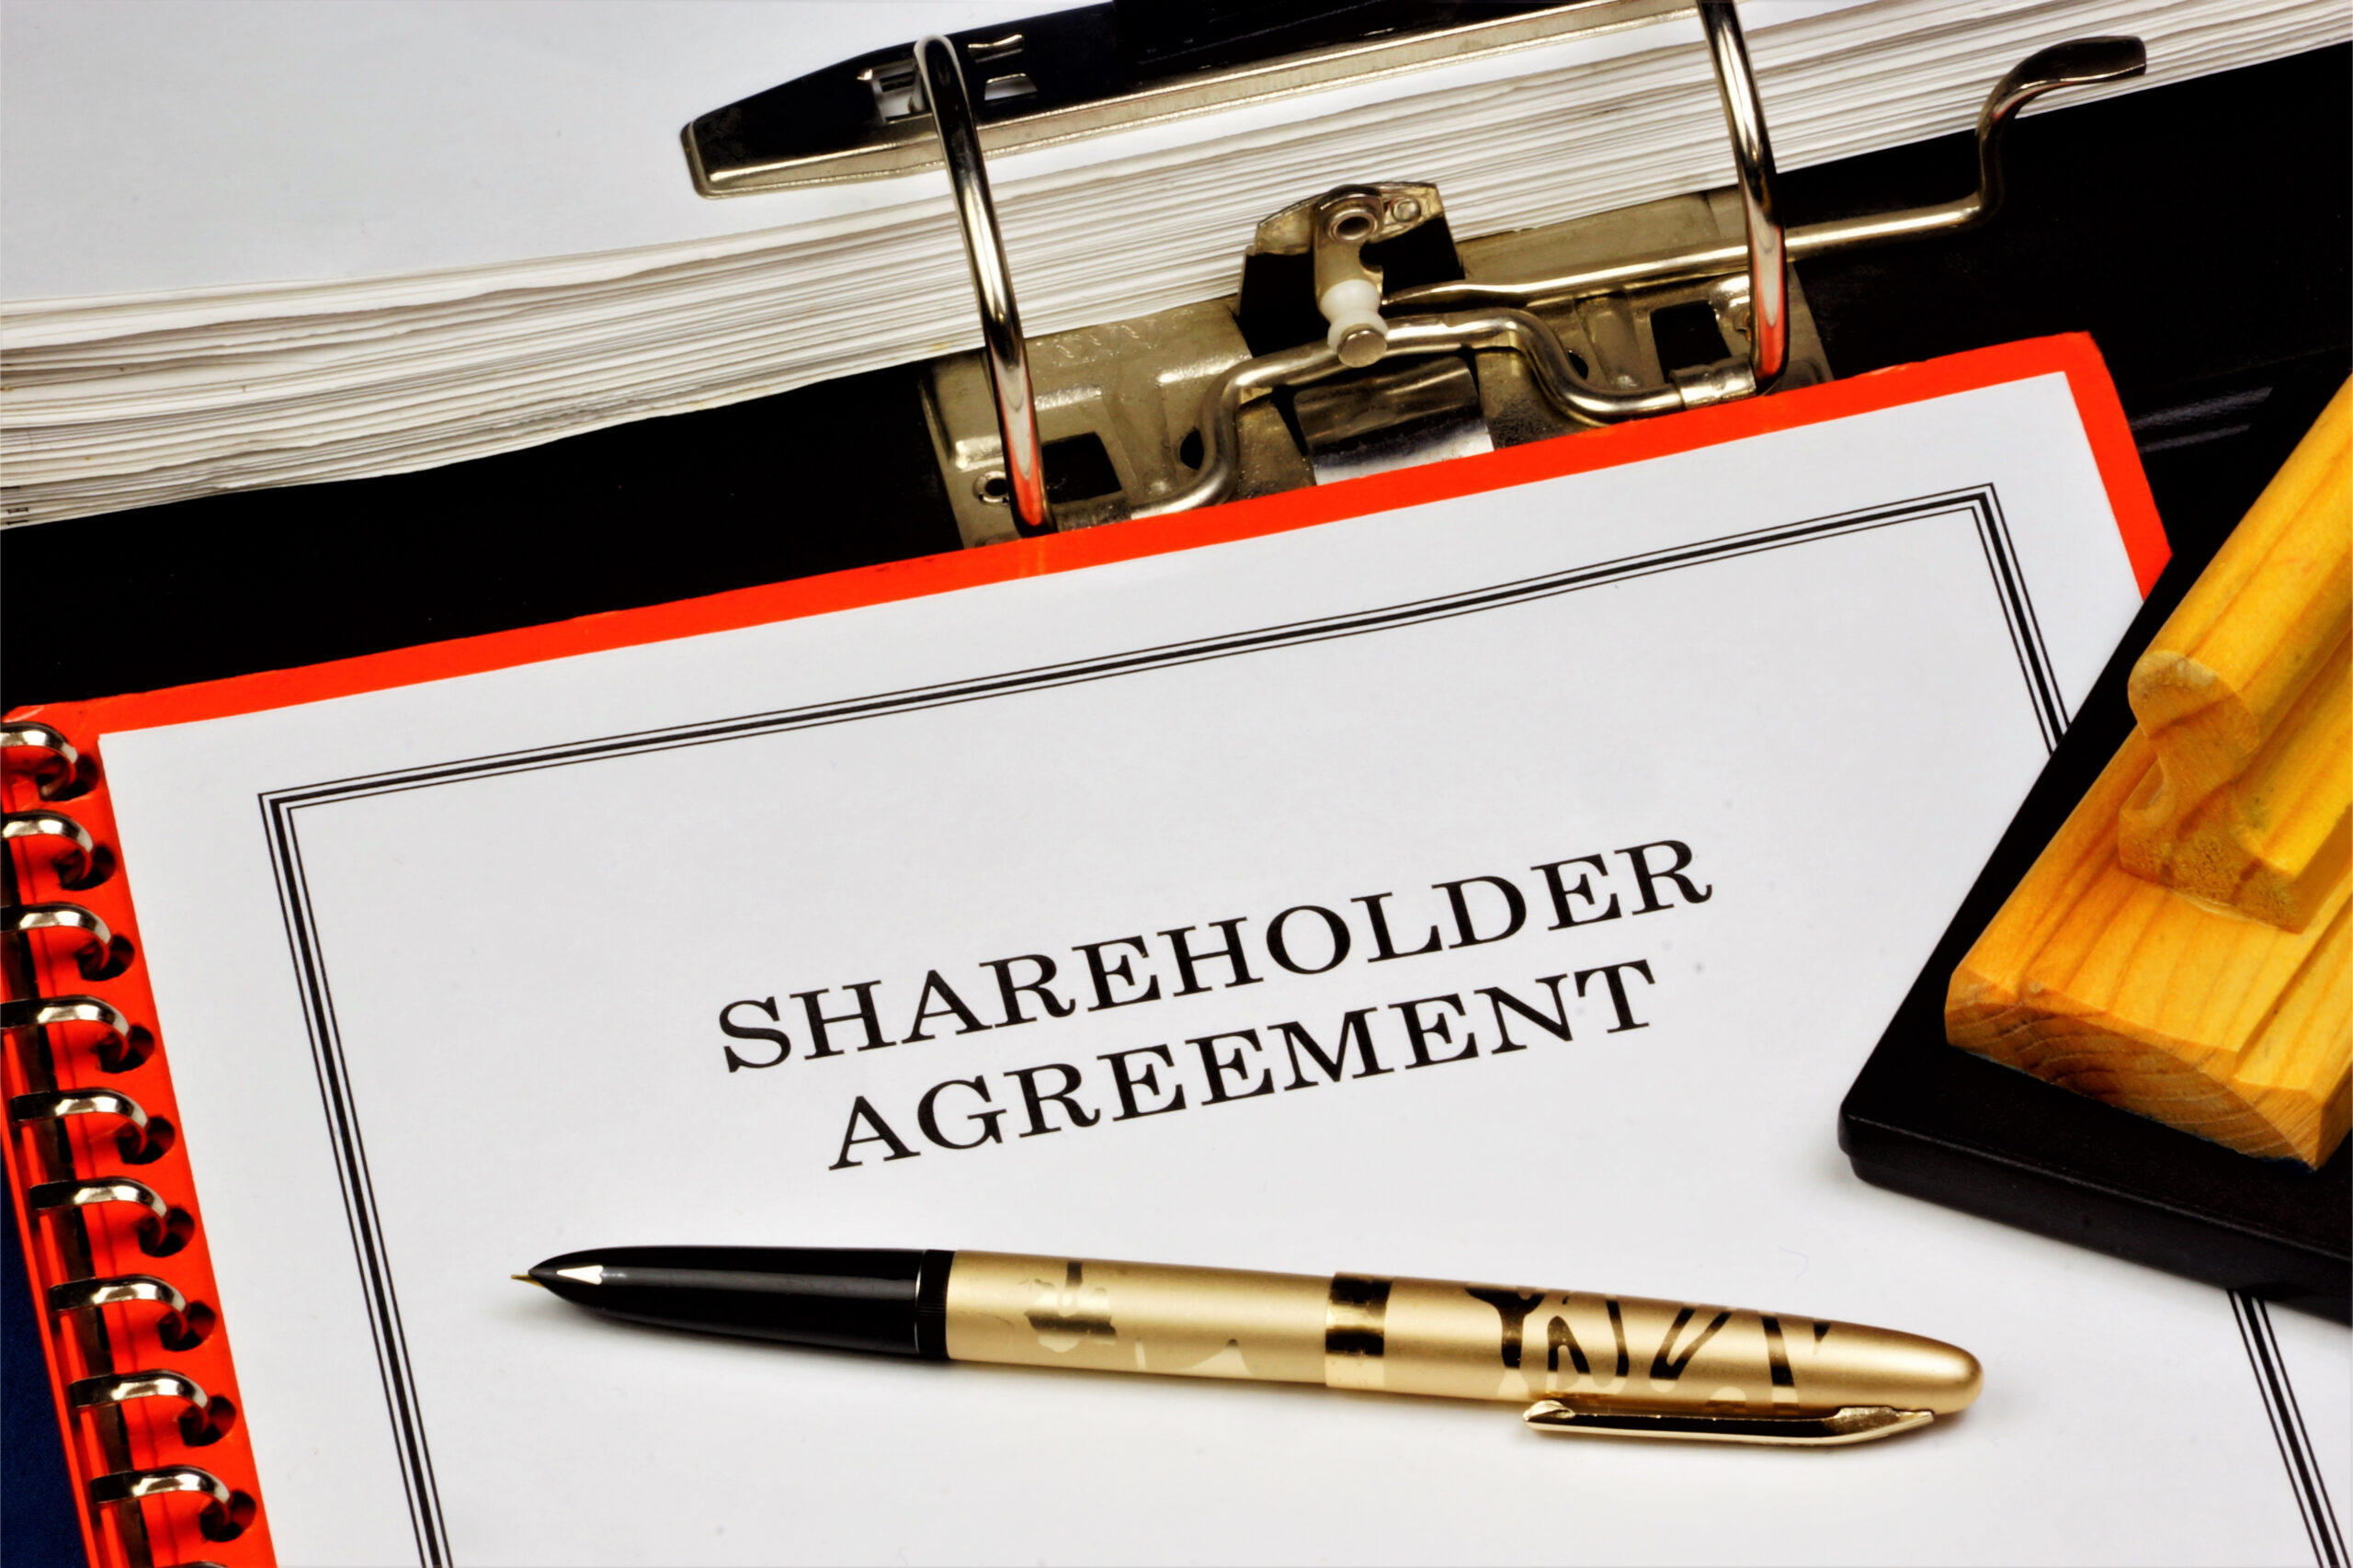 Shareholder agreement